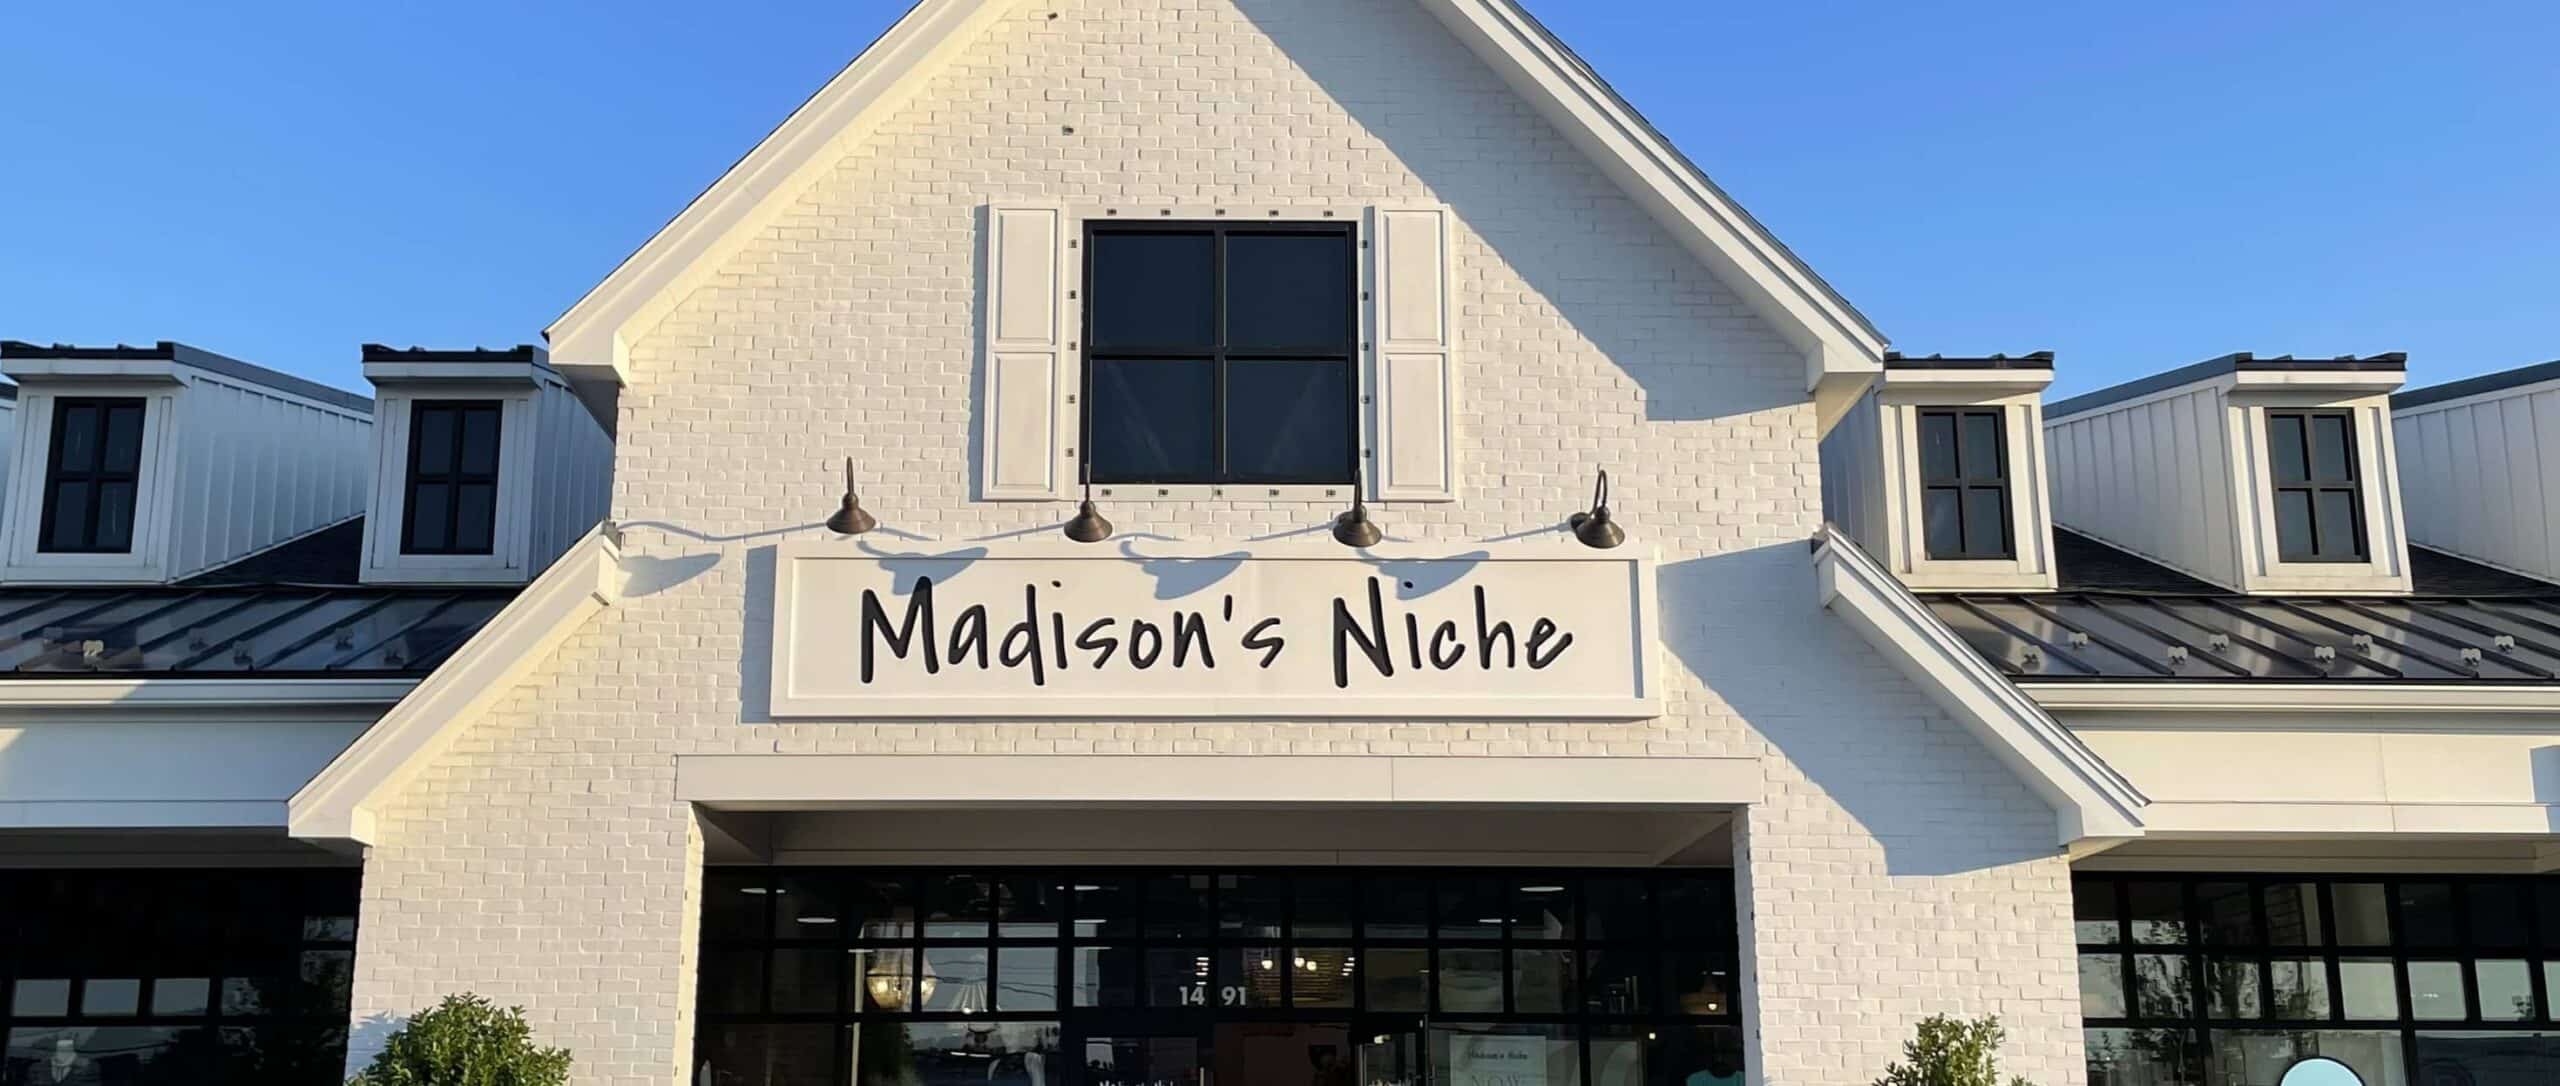 Madison's Niche